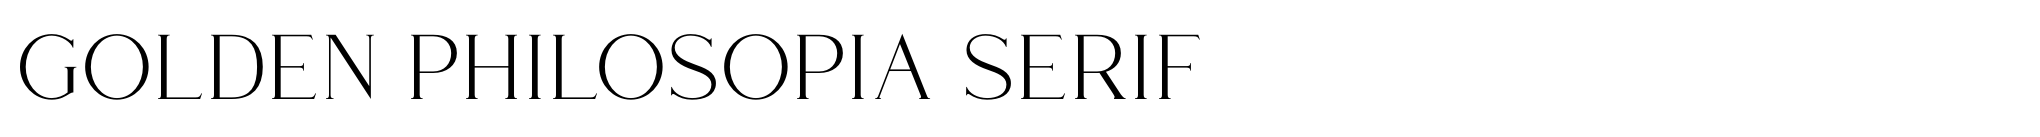 Golden Philosopia Serif image